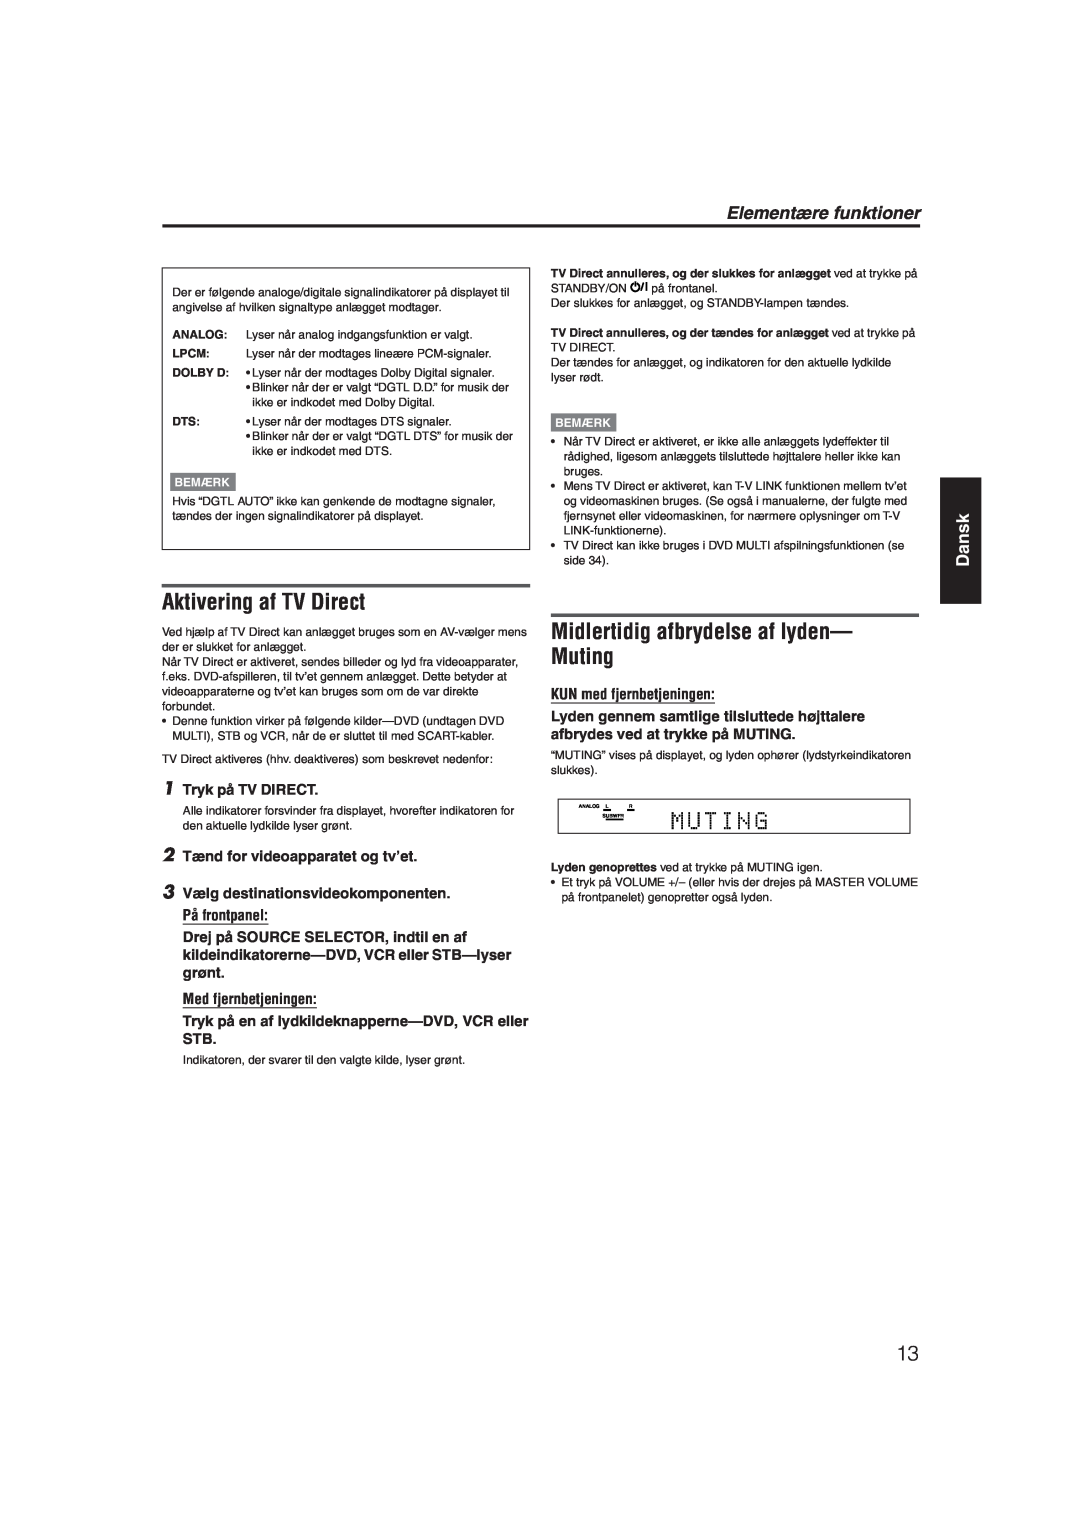 JVC RX-ES1SL manual Aktivering af TV Direct, Midlertidig afbrydelse af lyden- Muting, Elementære funktioner, Dansk, Bemærk 